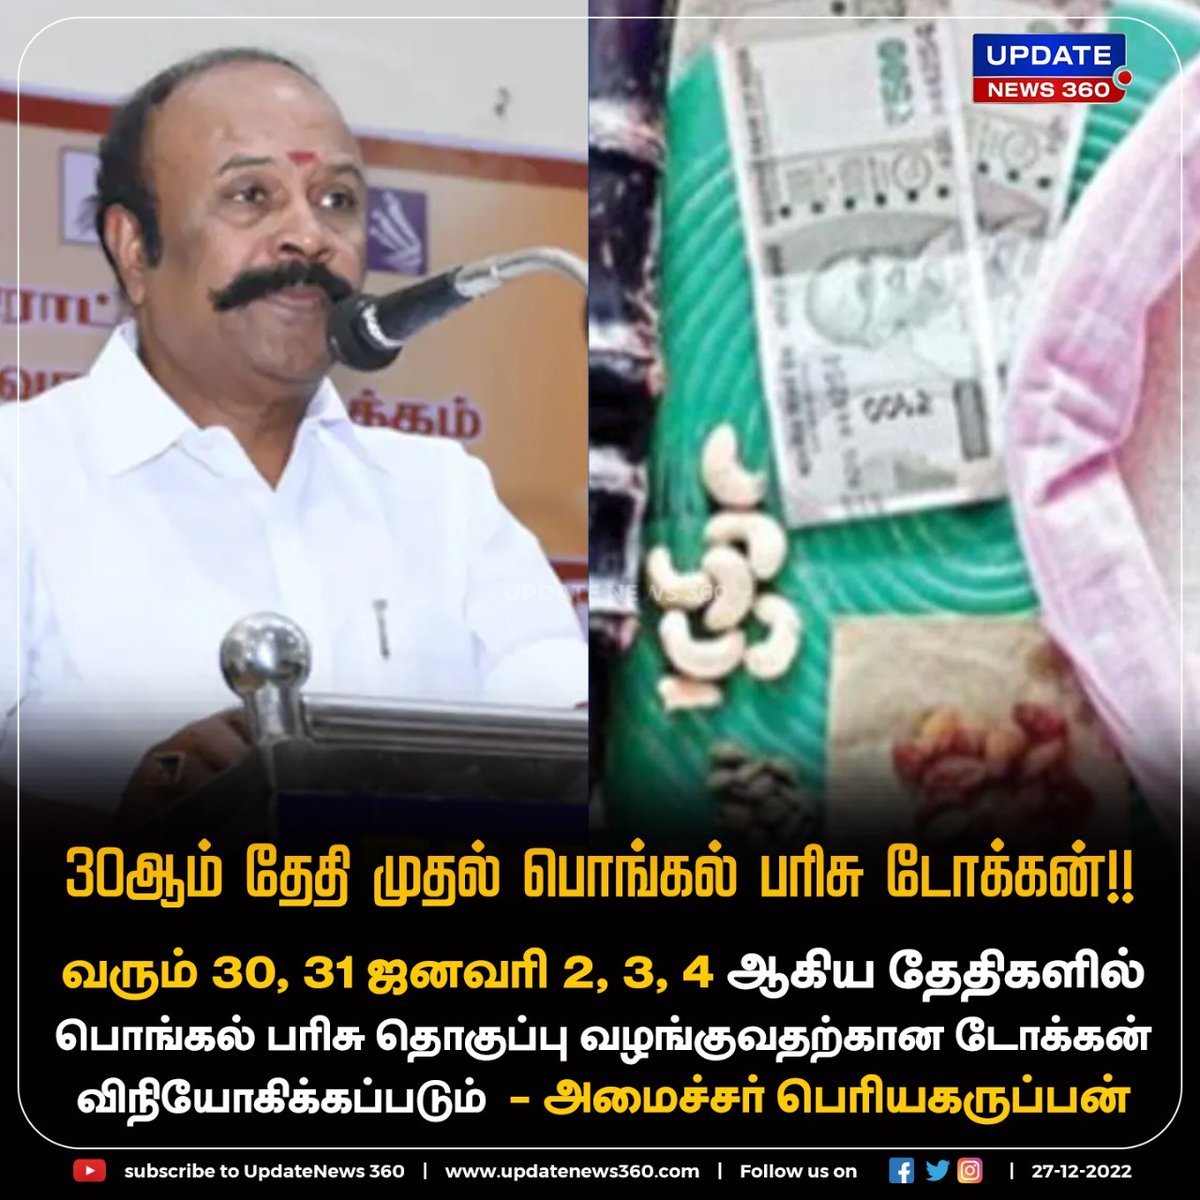 #Breaking | பொங்கல் பரிசுக்கான டோக்கன் வரும் 30ஆம் தேதி முதல் விநியோகம் செய்யப்படும் என அறிவிப்பு!!

#UpdateNews | #Pongal2023  | #PongalGifts | #Minister | #periyakaruppan | #Tamilnadu |  #TamilNews | #UpdateNews360